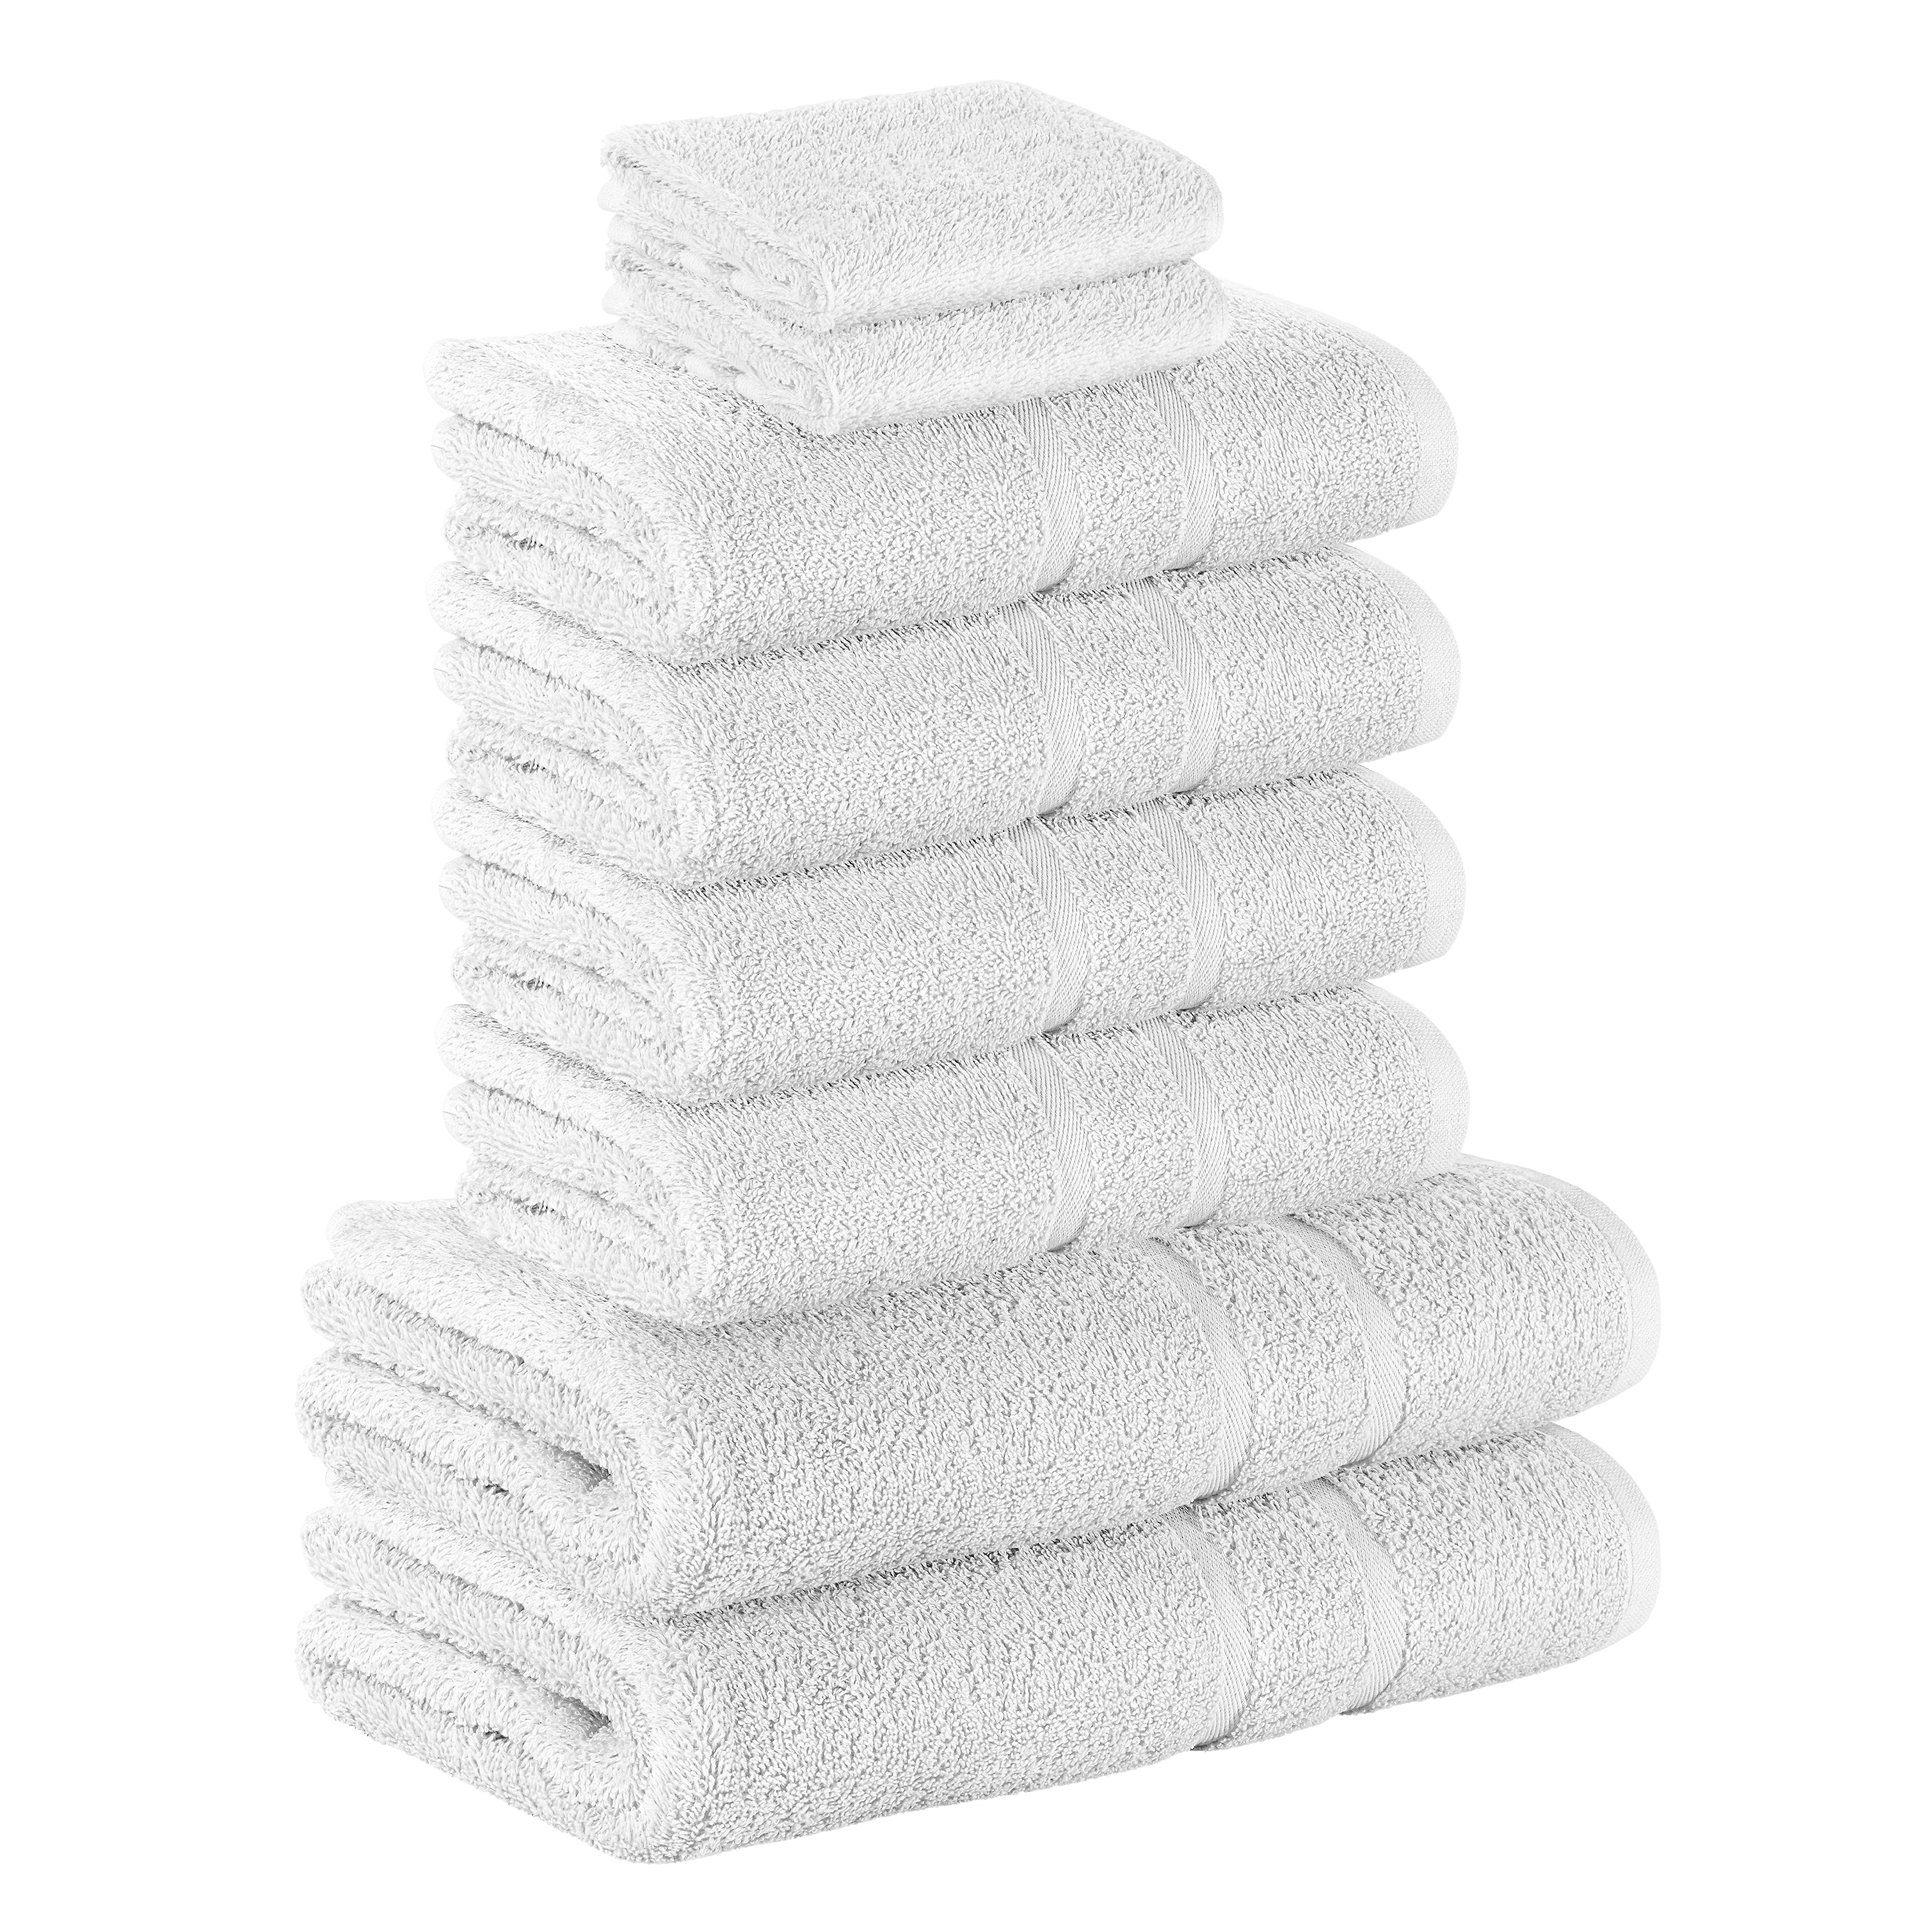 StickandShine Handtuch Set 2x Gästehandtuch 4x Handtücher 2x Duschtücher als SET in verschiedenen Farben (8 Teilig) 100% Baumwolle 500 GSM Frottee 8er Handtuch Pack, 100% Baumwolle 500 GSM Weiß